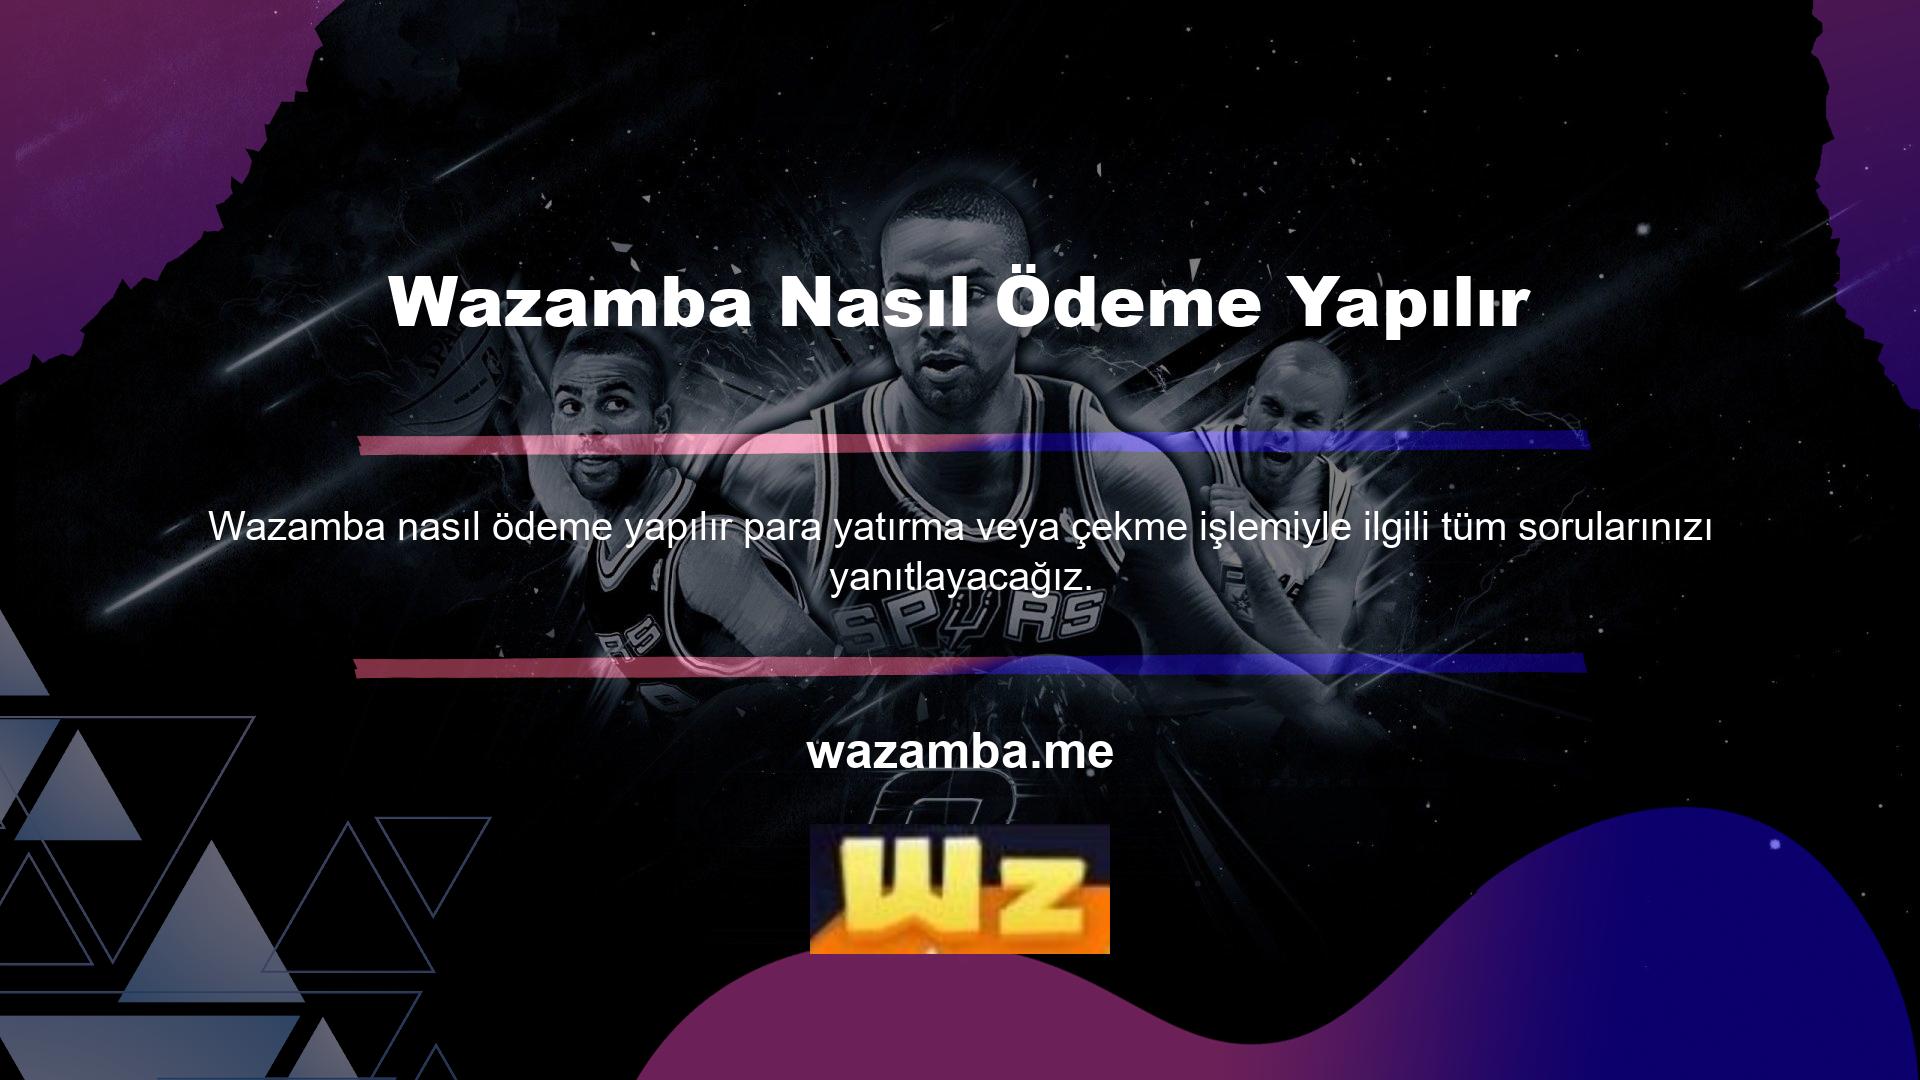 Wazamba çeşitli ödeme teknolojileri sunmaktadır